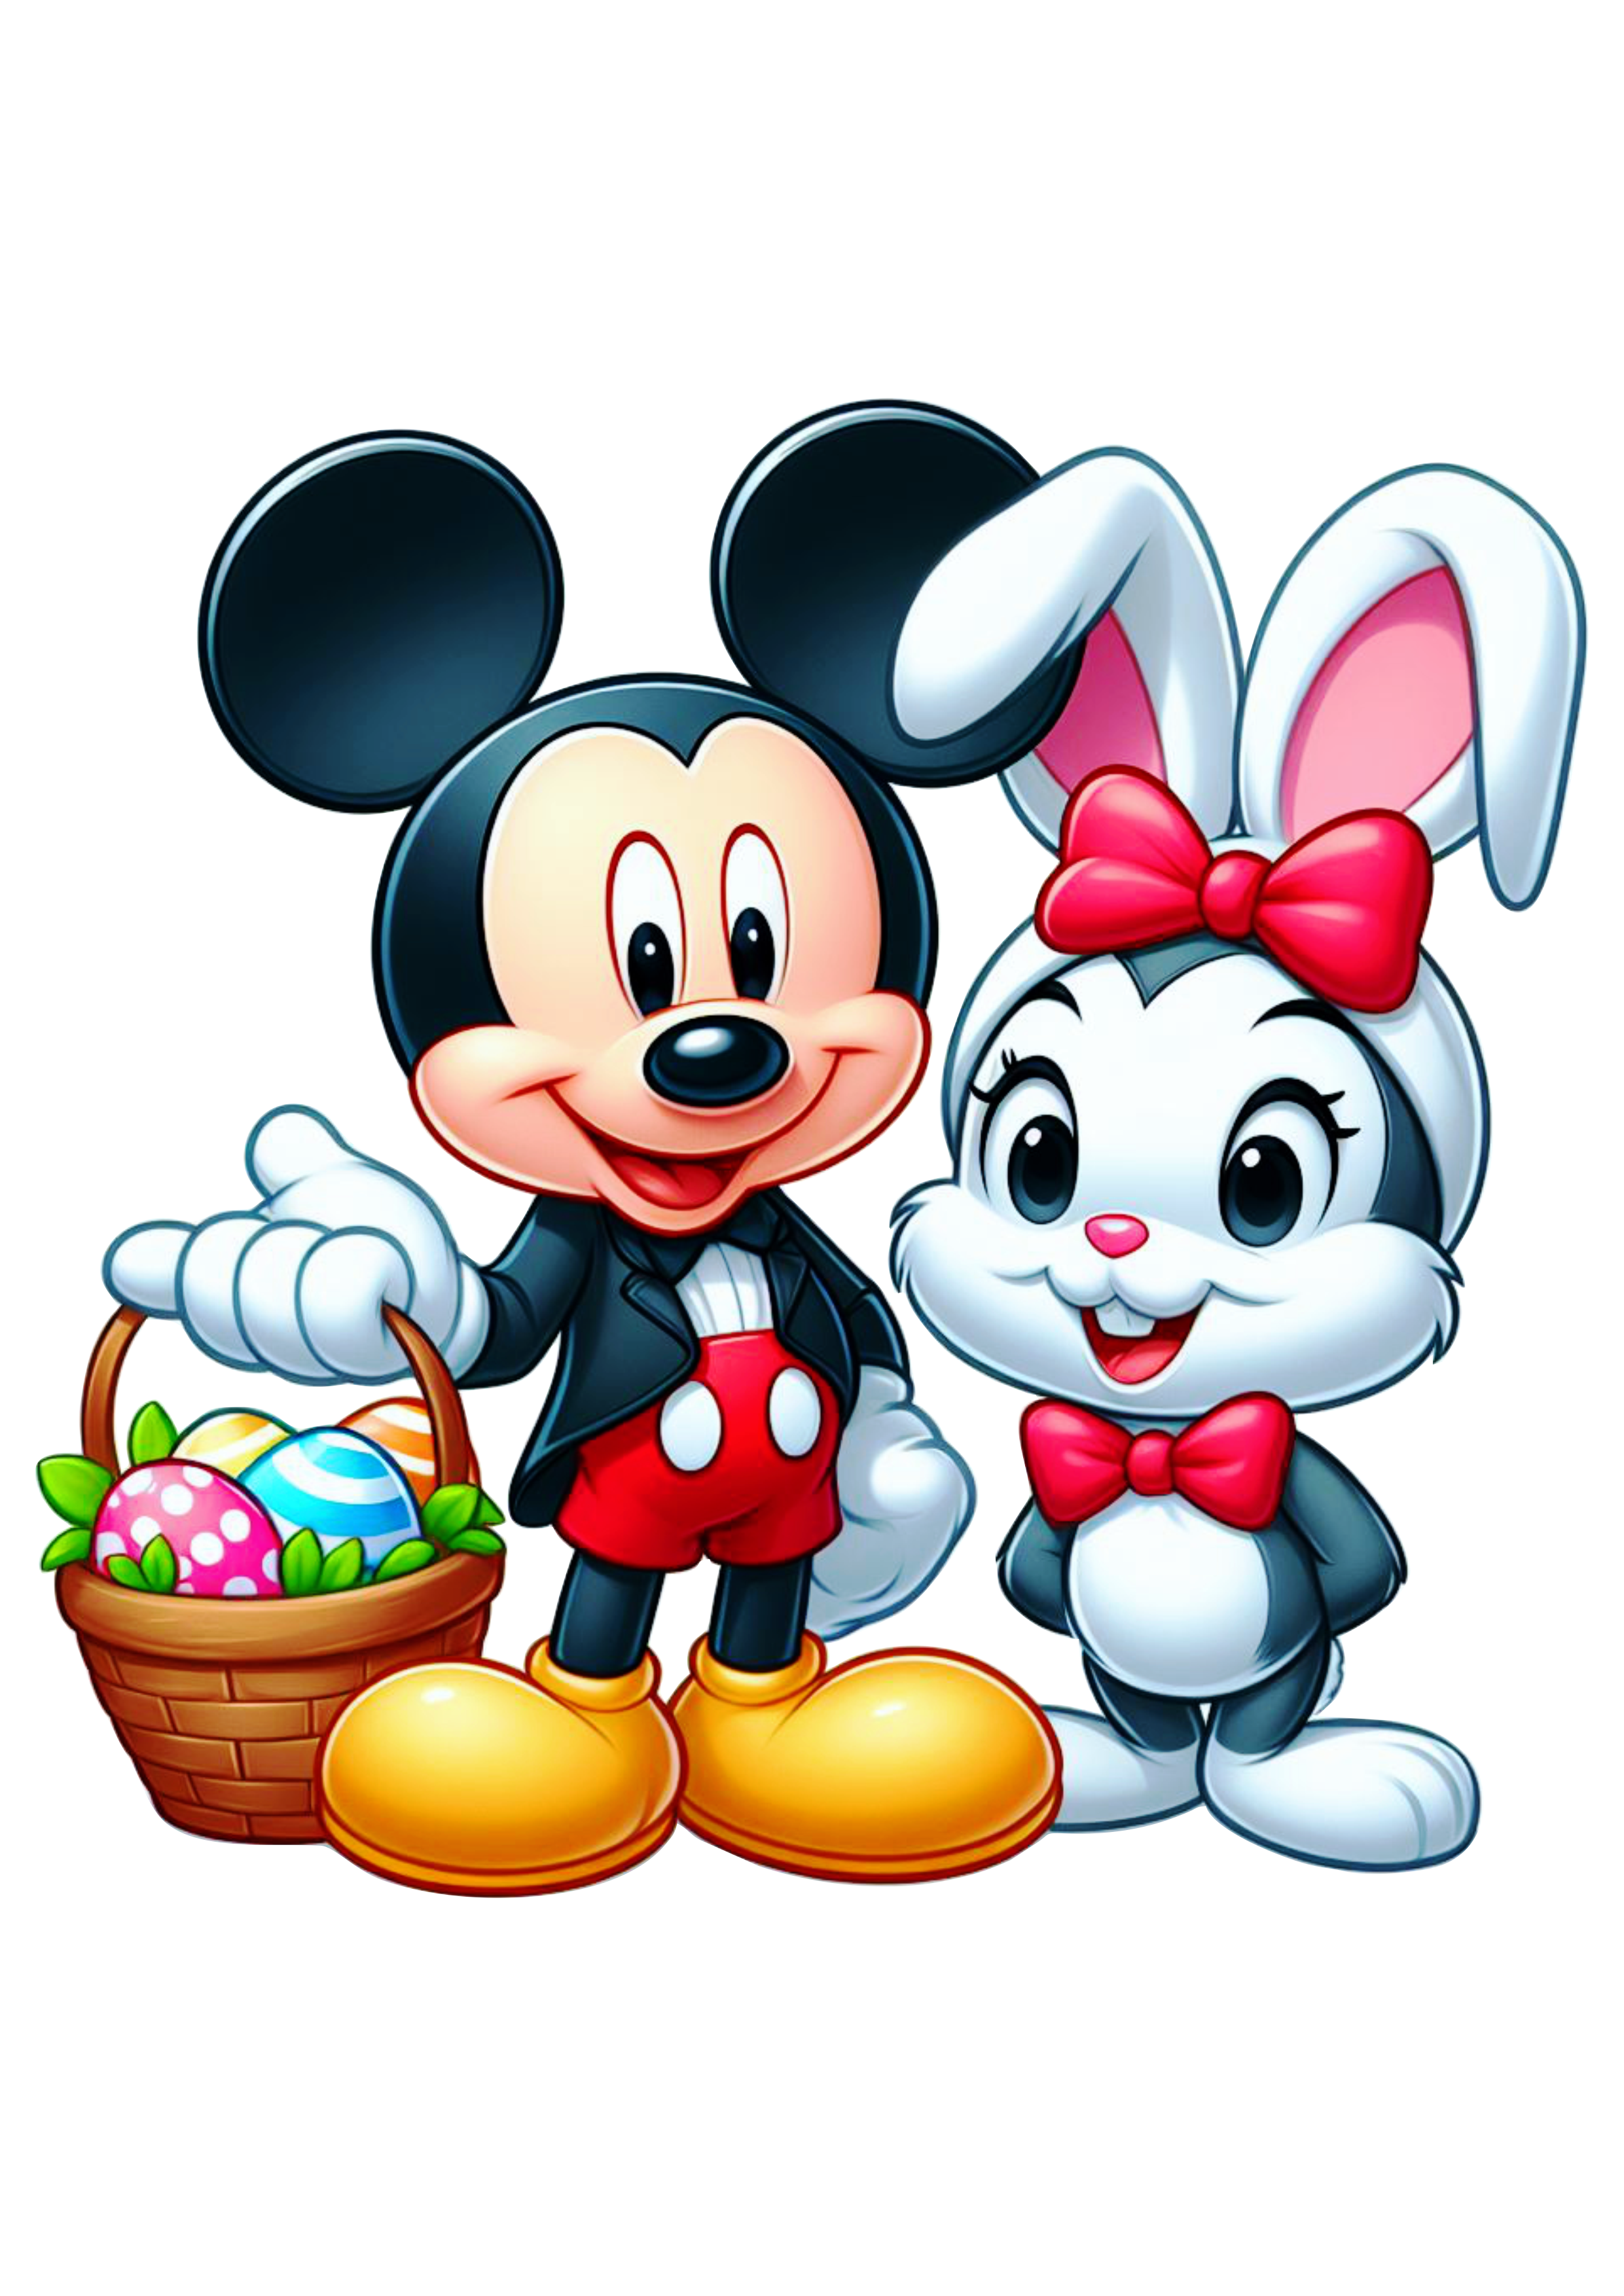 Disney Mickey mouse fantasiado de coelhinho da páscoa desenho infantil pack de imagens fofura png